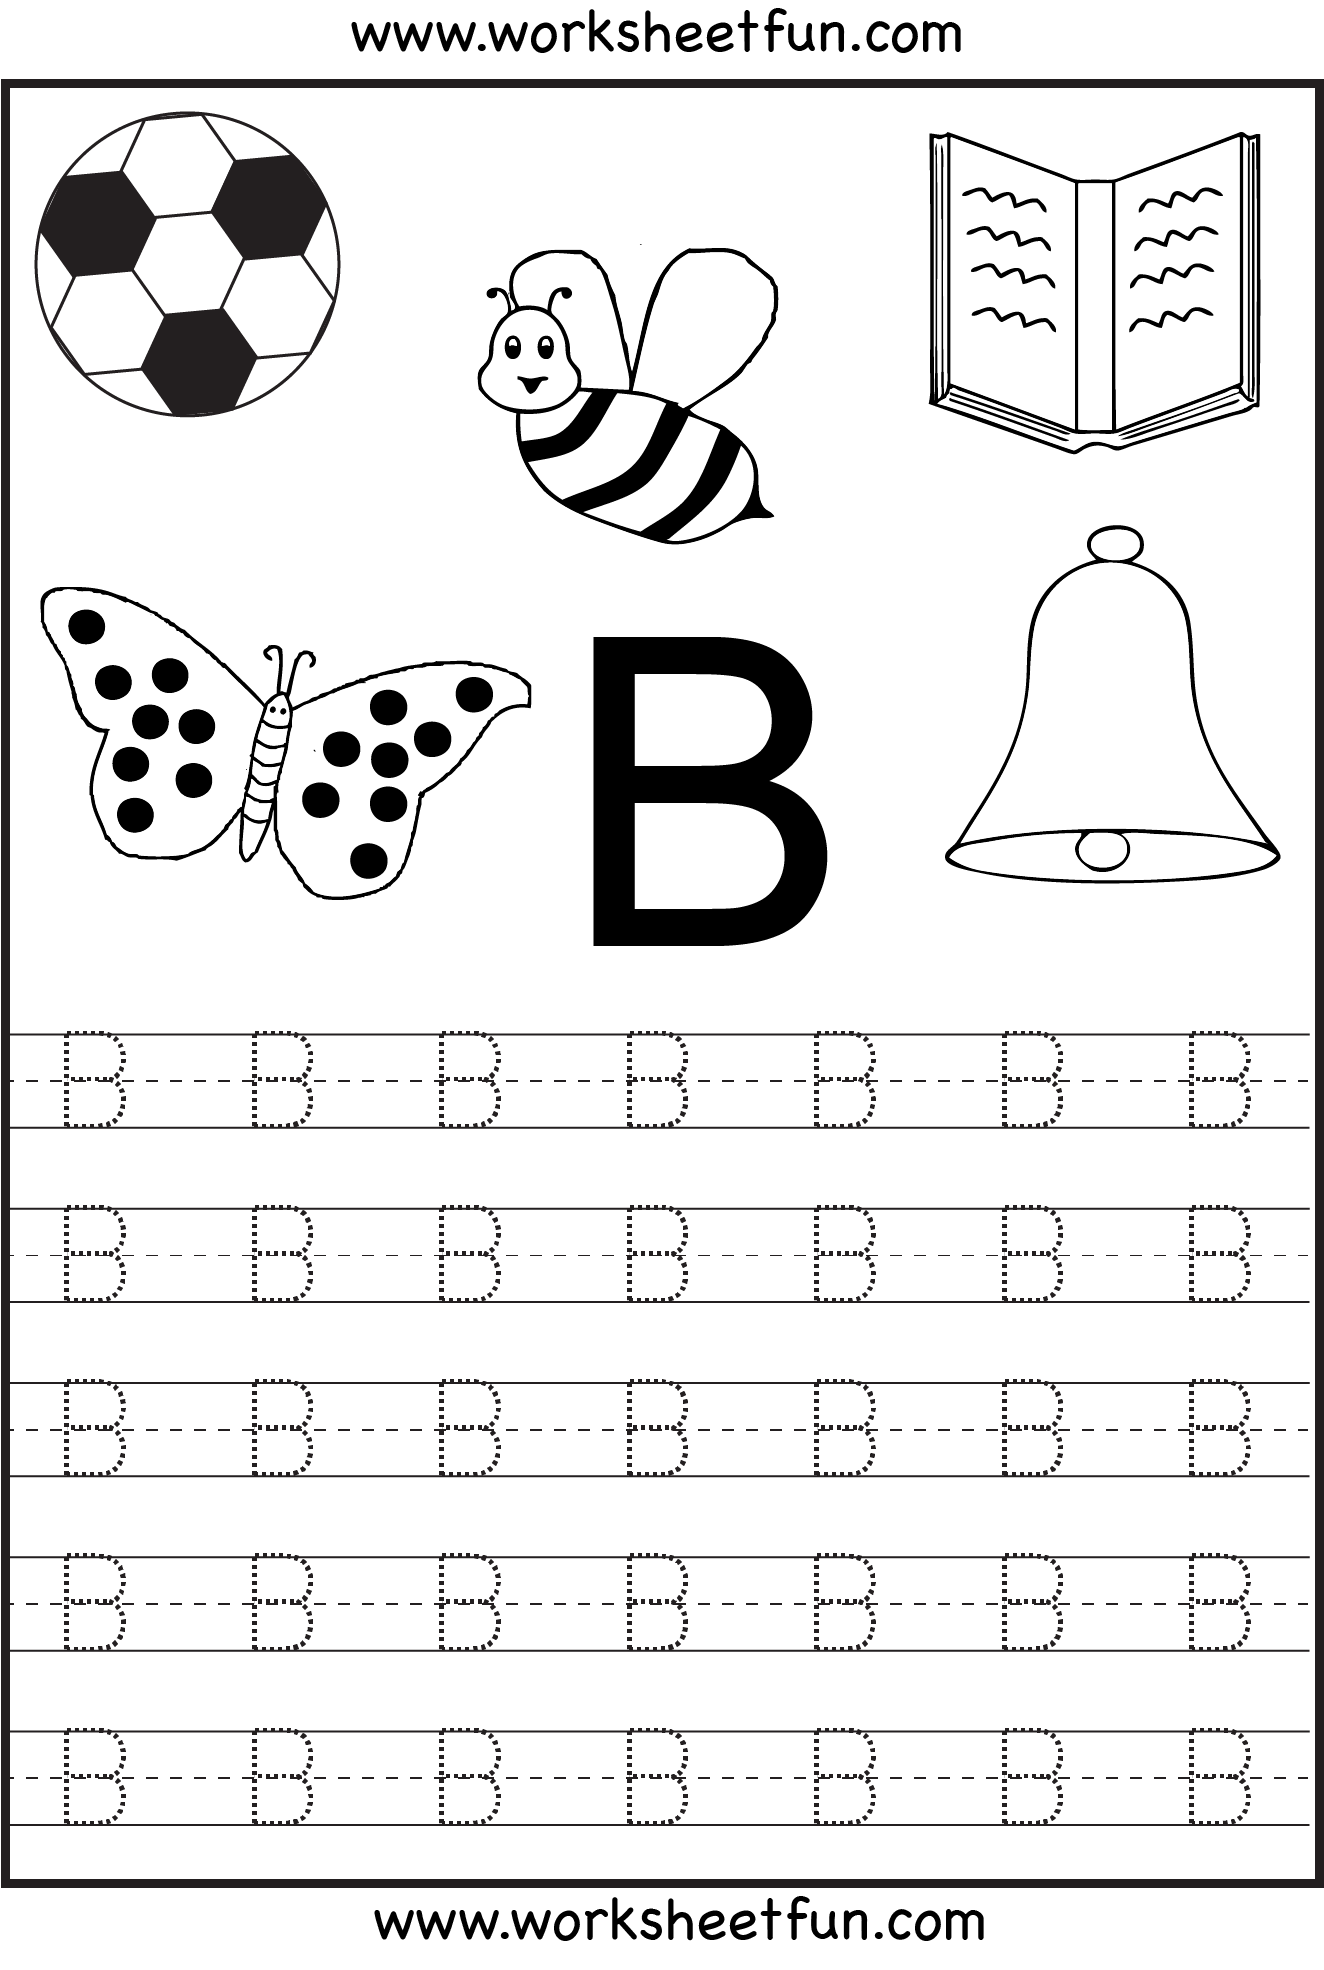 Free Printable Worksheets For Kindergarten Letter I